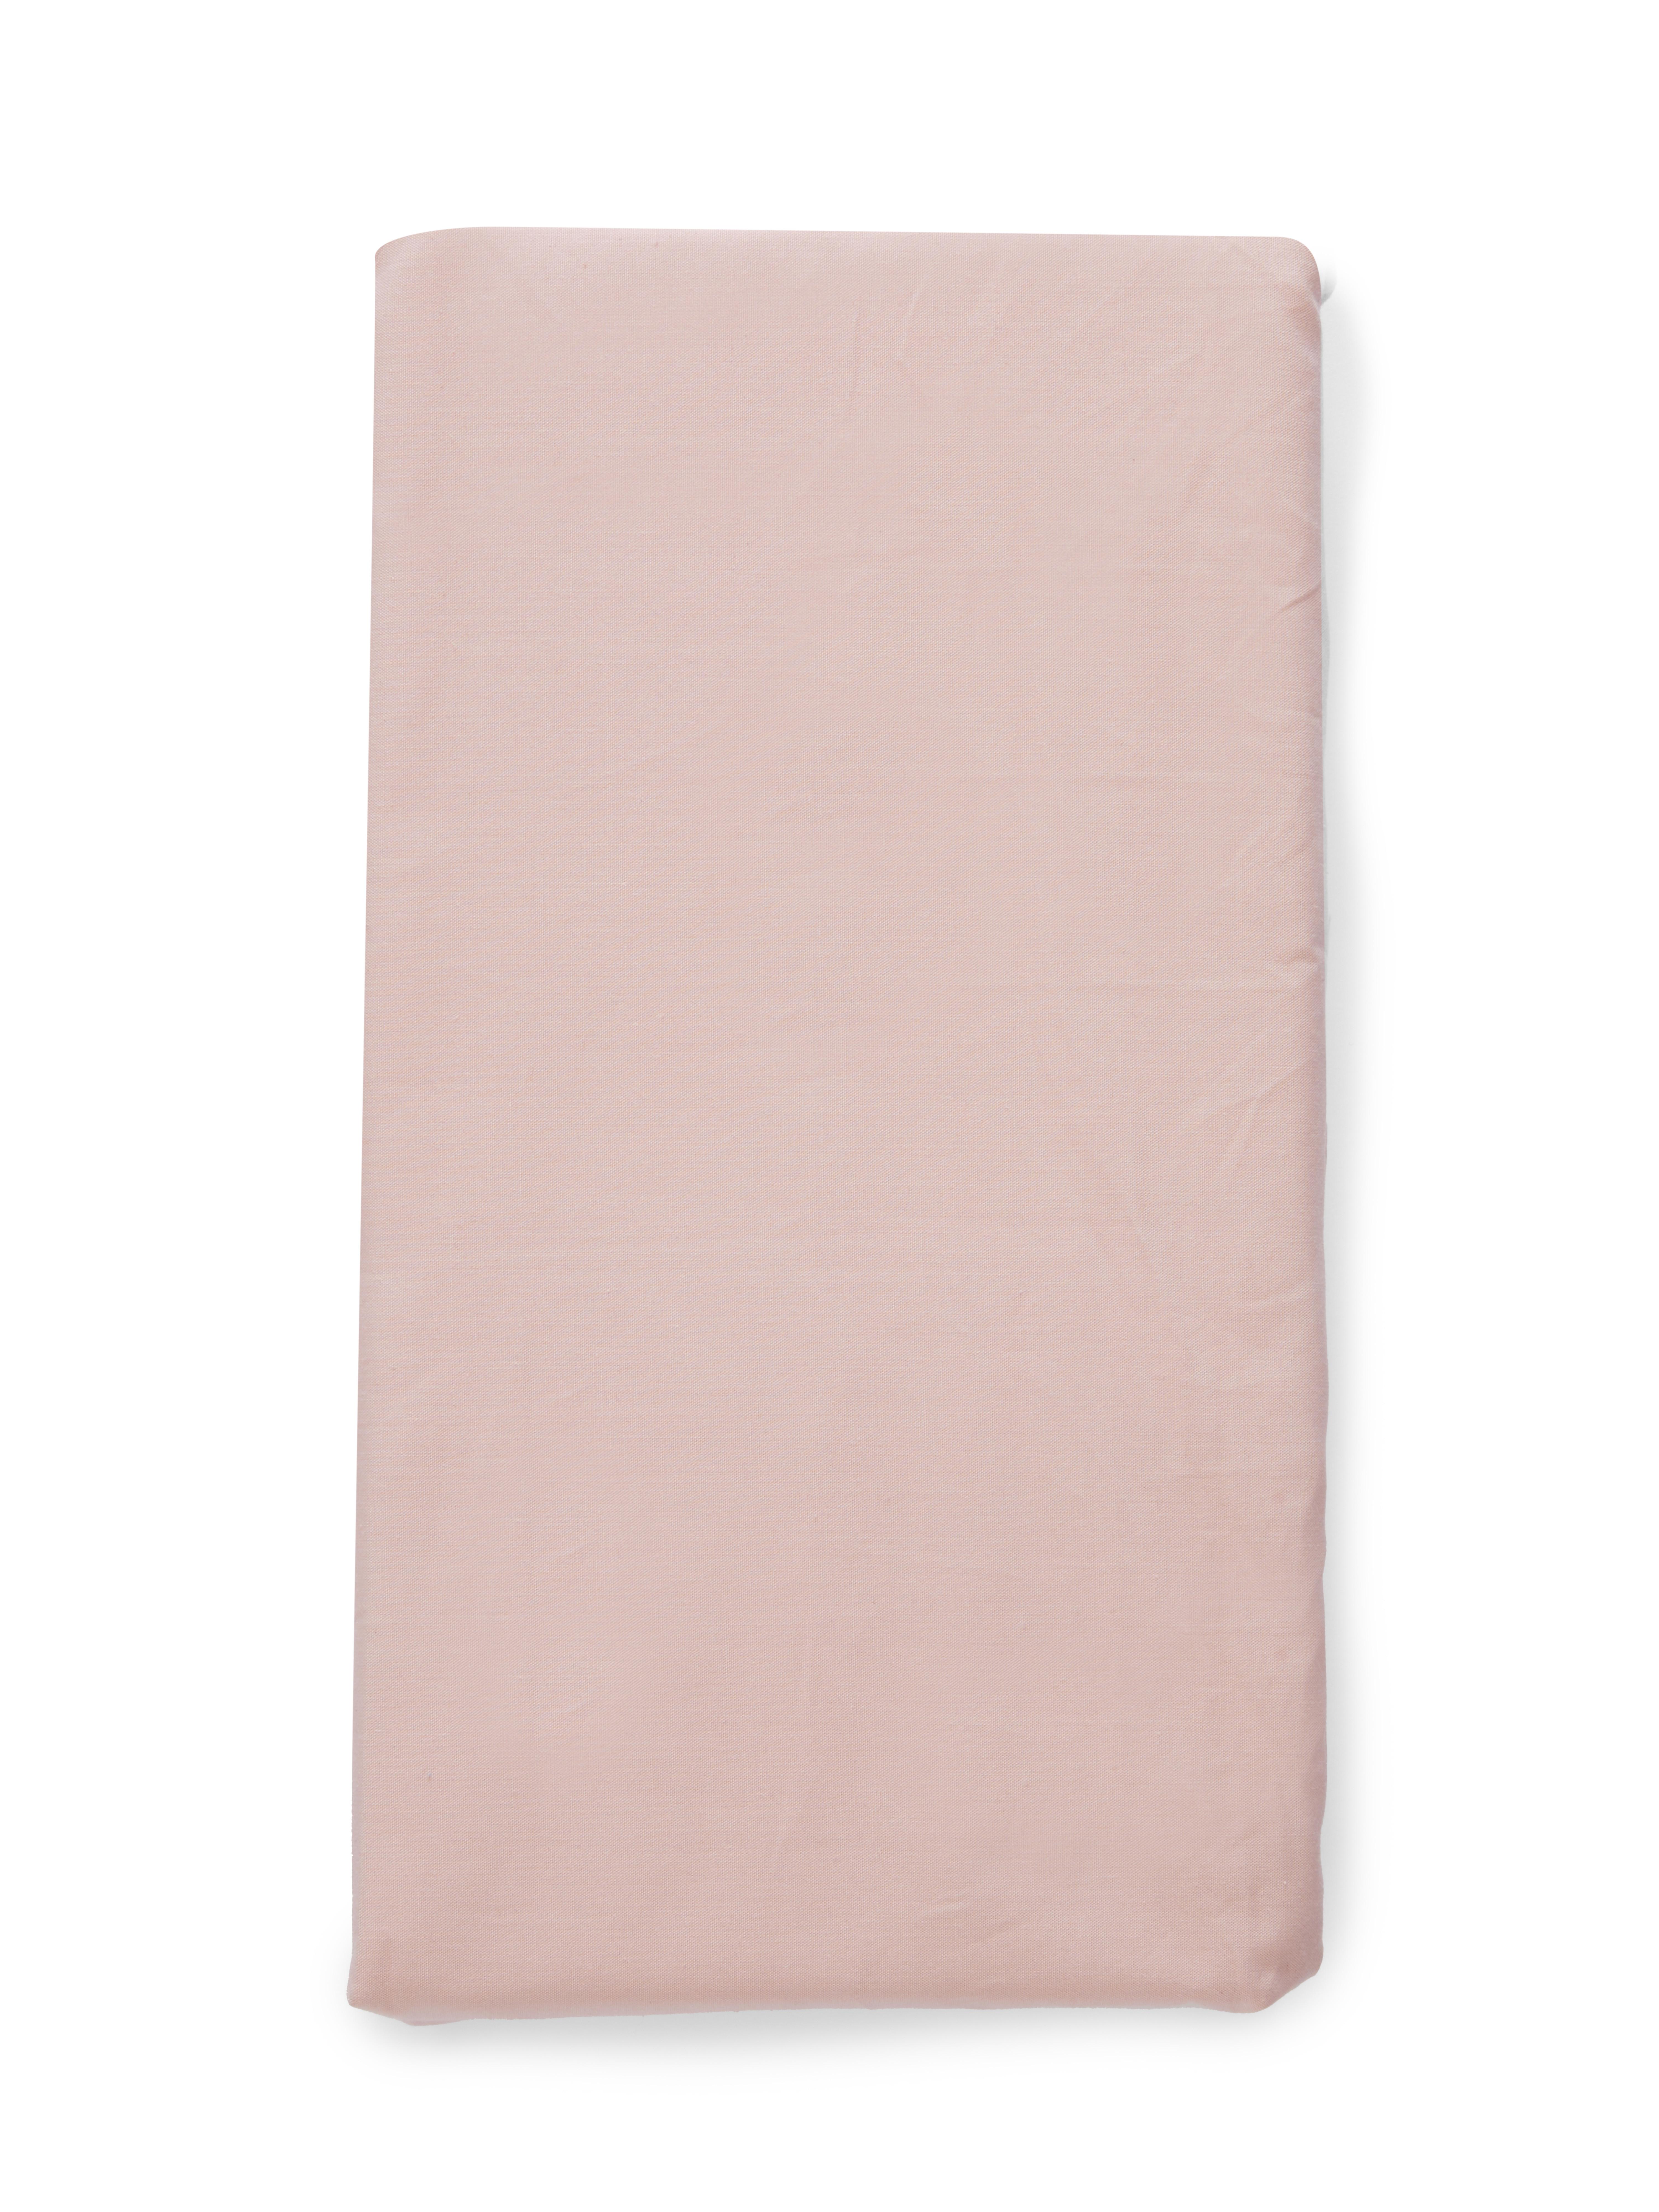 Pink Single Flat Sheet